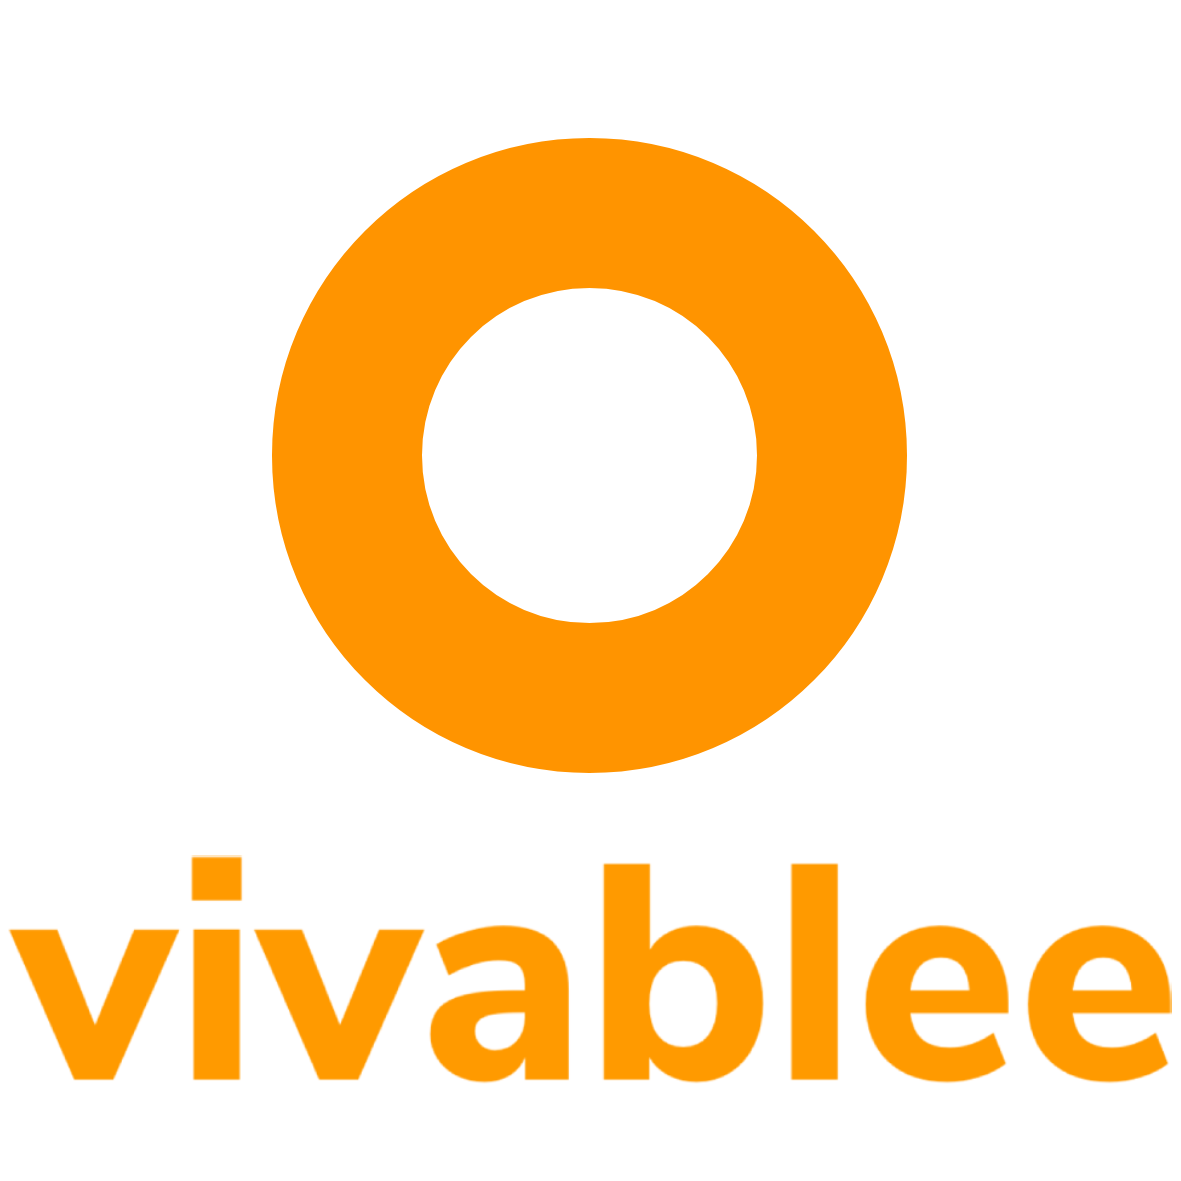 Vivablee 免費訂閱半年計劃